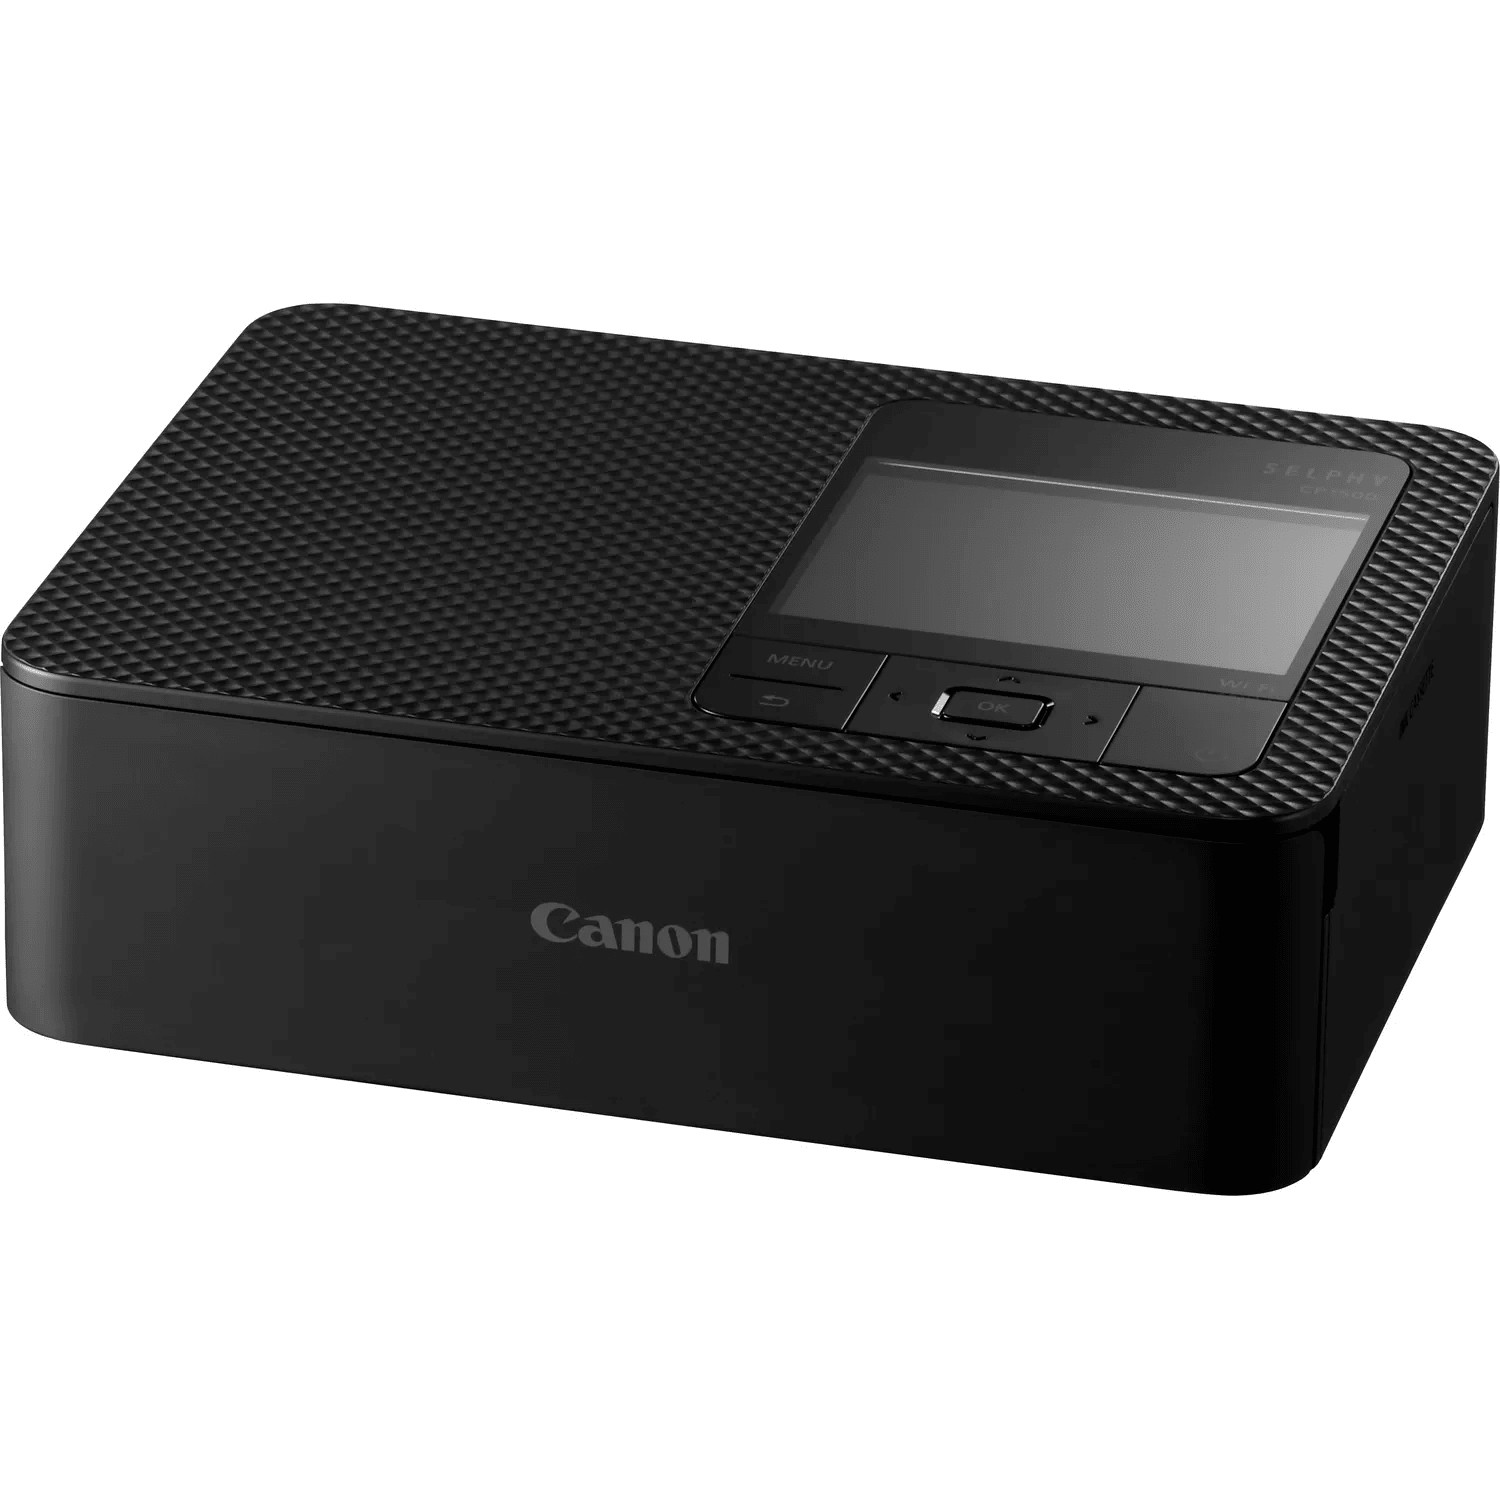 CANON SELPHY CP1500 stampante per foto Sublimazione 300 x 300 DPI 4 x 6  (10x15 cm) Wi-Fi, Stampanti fotografiche portatili in Offerta su Stay On